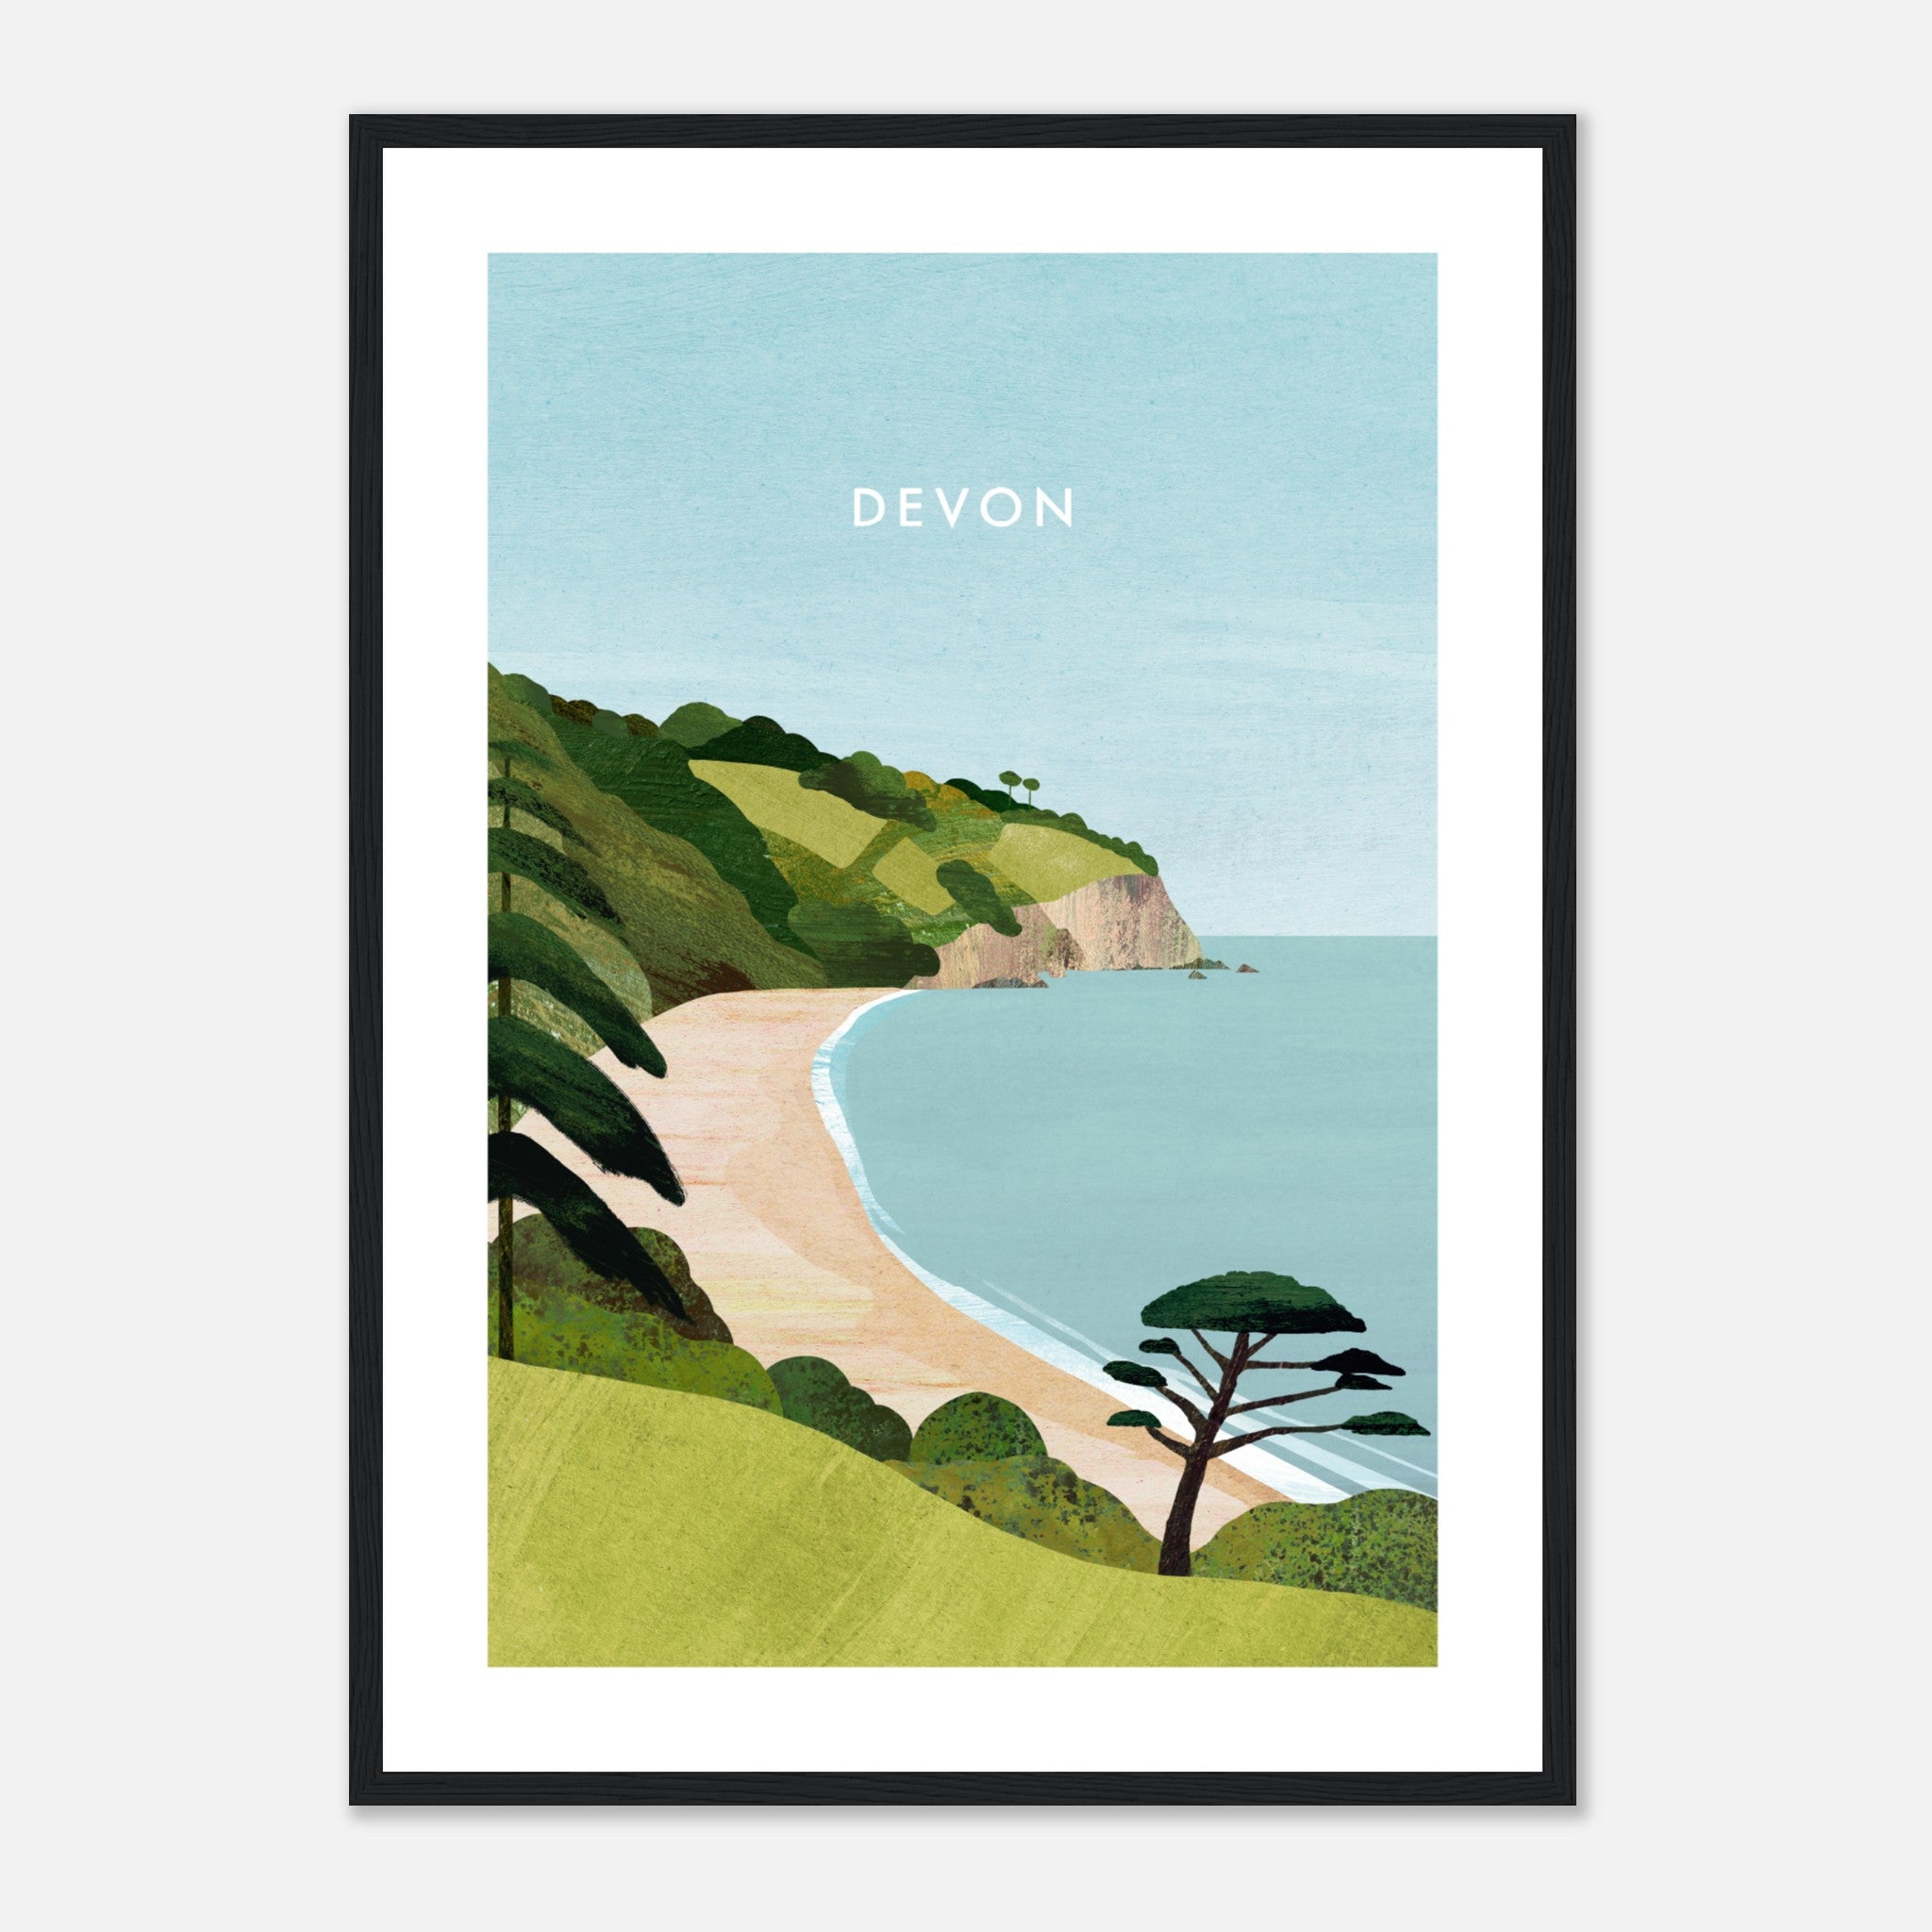 Devon, Blackpool Sands Poster